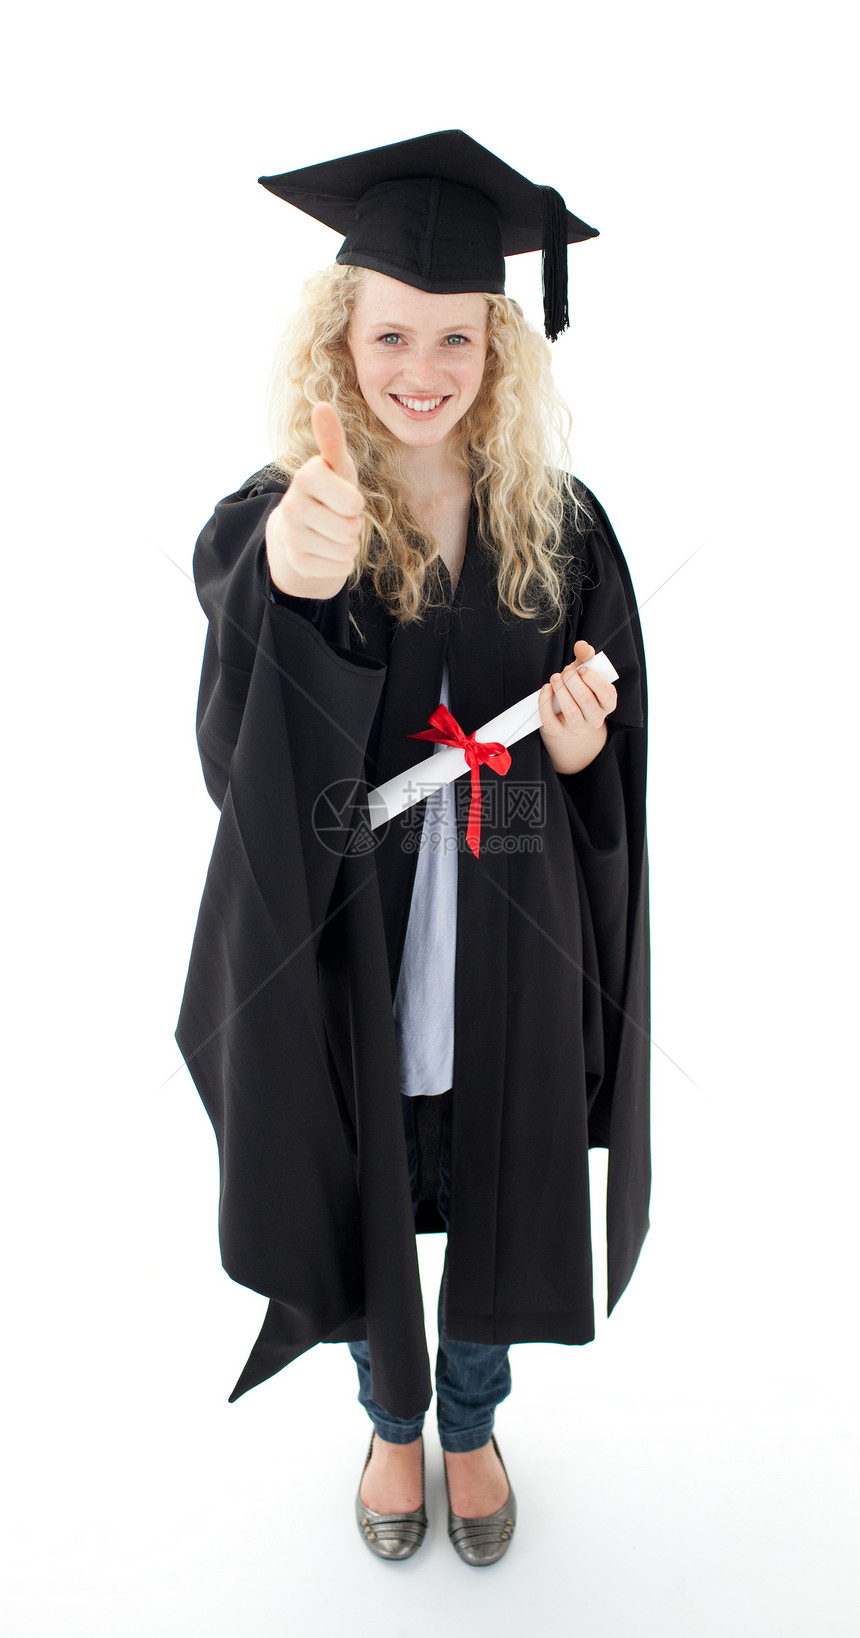 庆祝少女毕业 举起大拇指研究生喜悦文凭庆典女性长袍大学幸福教育微笑图片